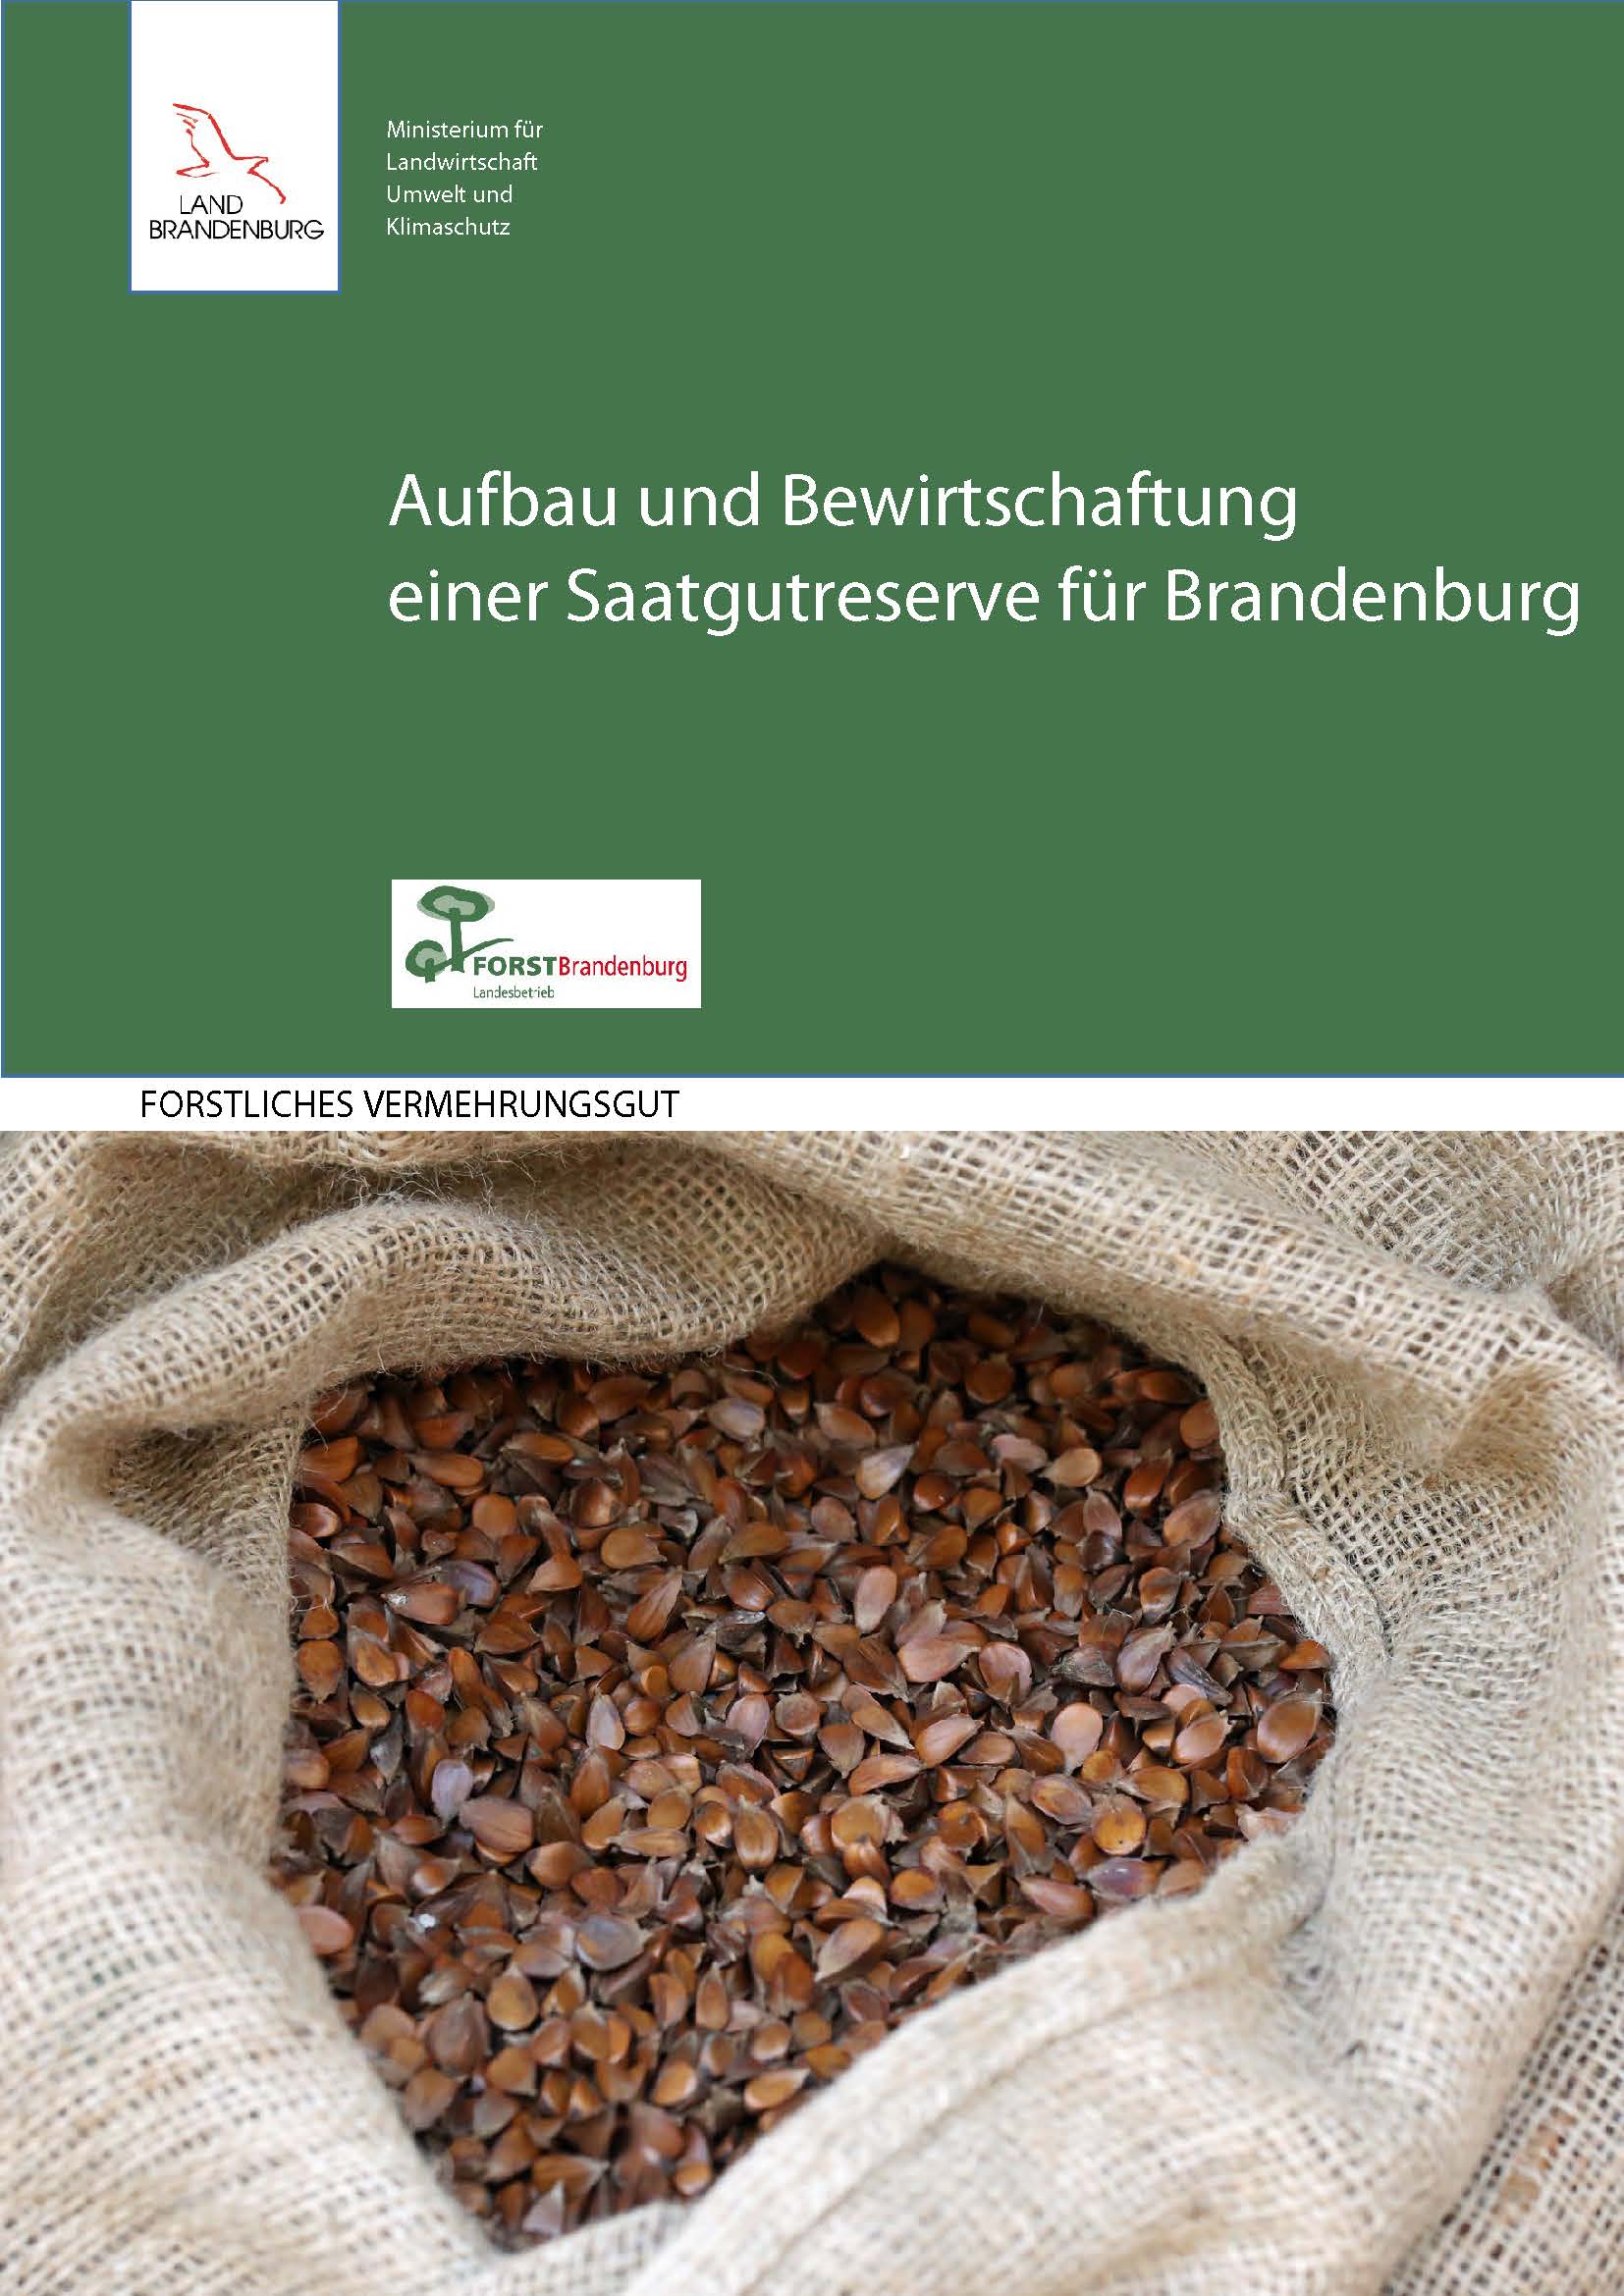 Bild vergrößern (Bild: Aufbau und Bewirtschaftung einer Saatgutreserve für Brandenburg)